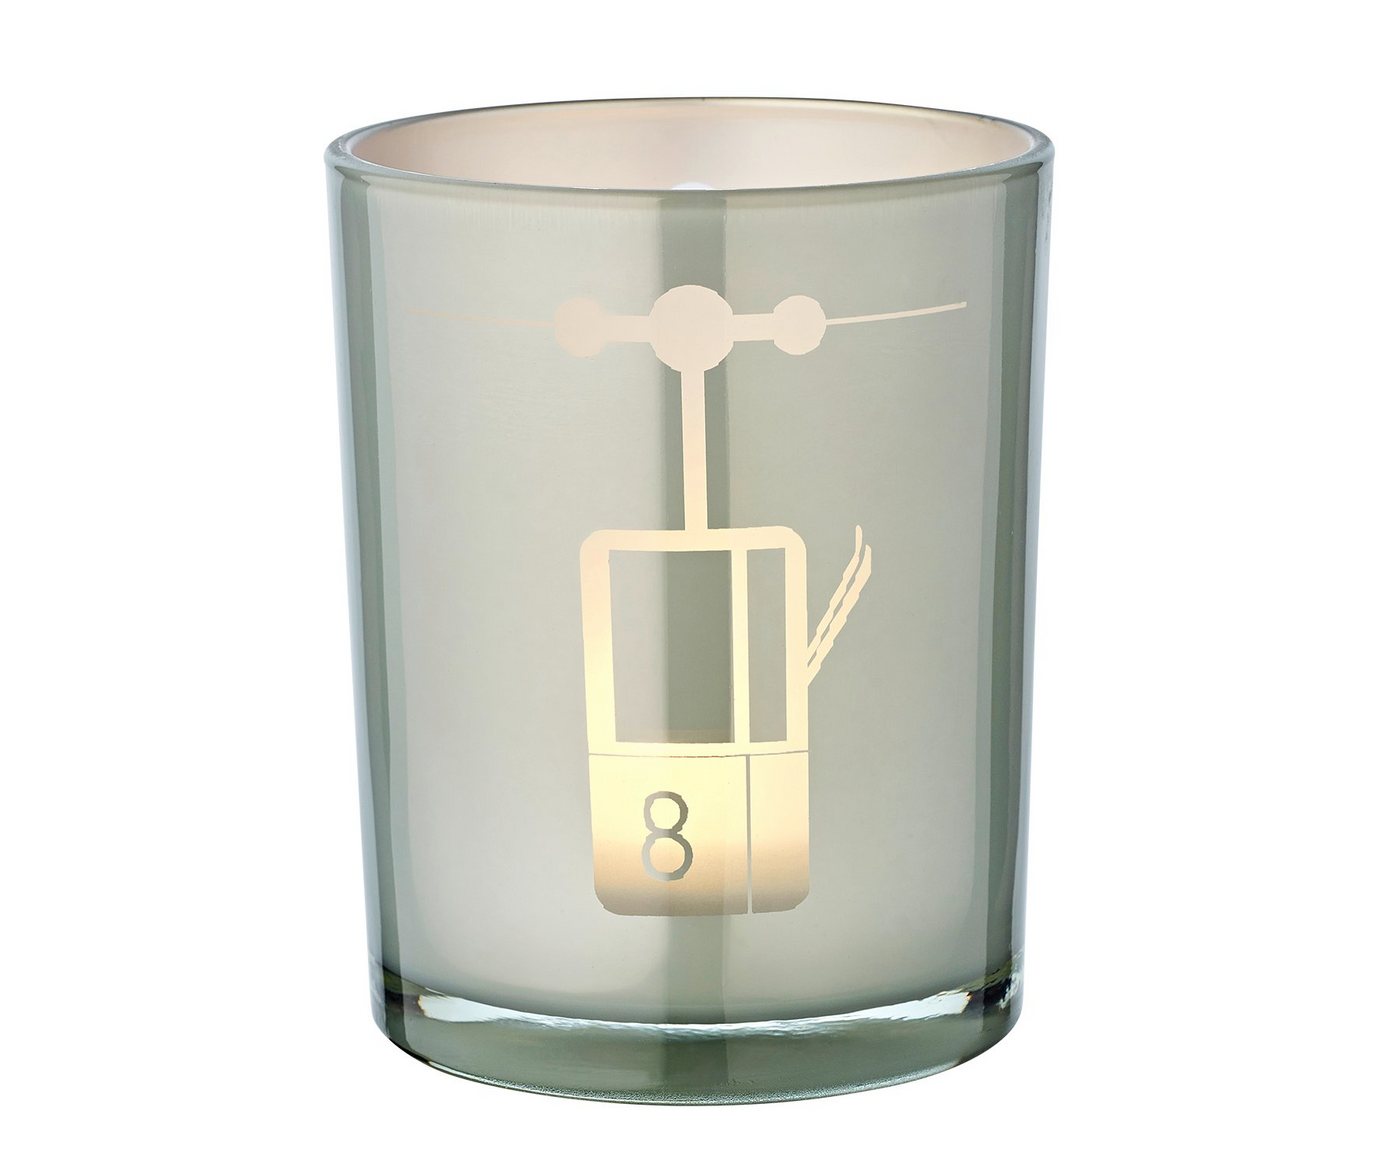 EDZARD Windlicht Lift, Windlicht, Kerzenglas mit Lift-Motiv in Grau-Weiß, Teelichtglas für Teelichter, Höhe 13 cm, Ø 10 cm von EDZARD